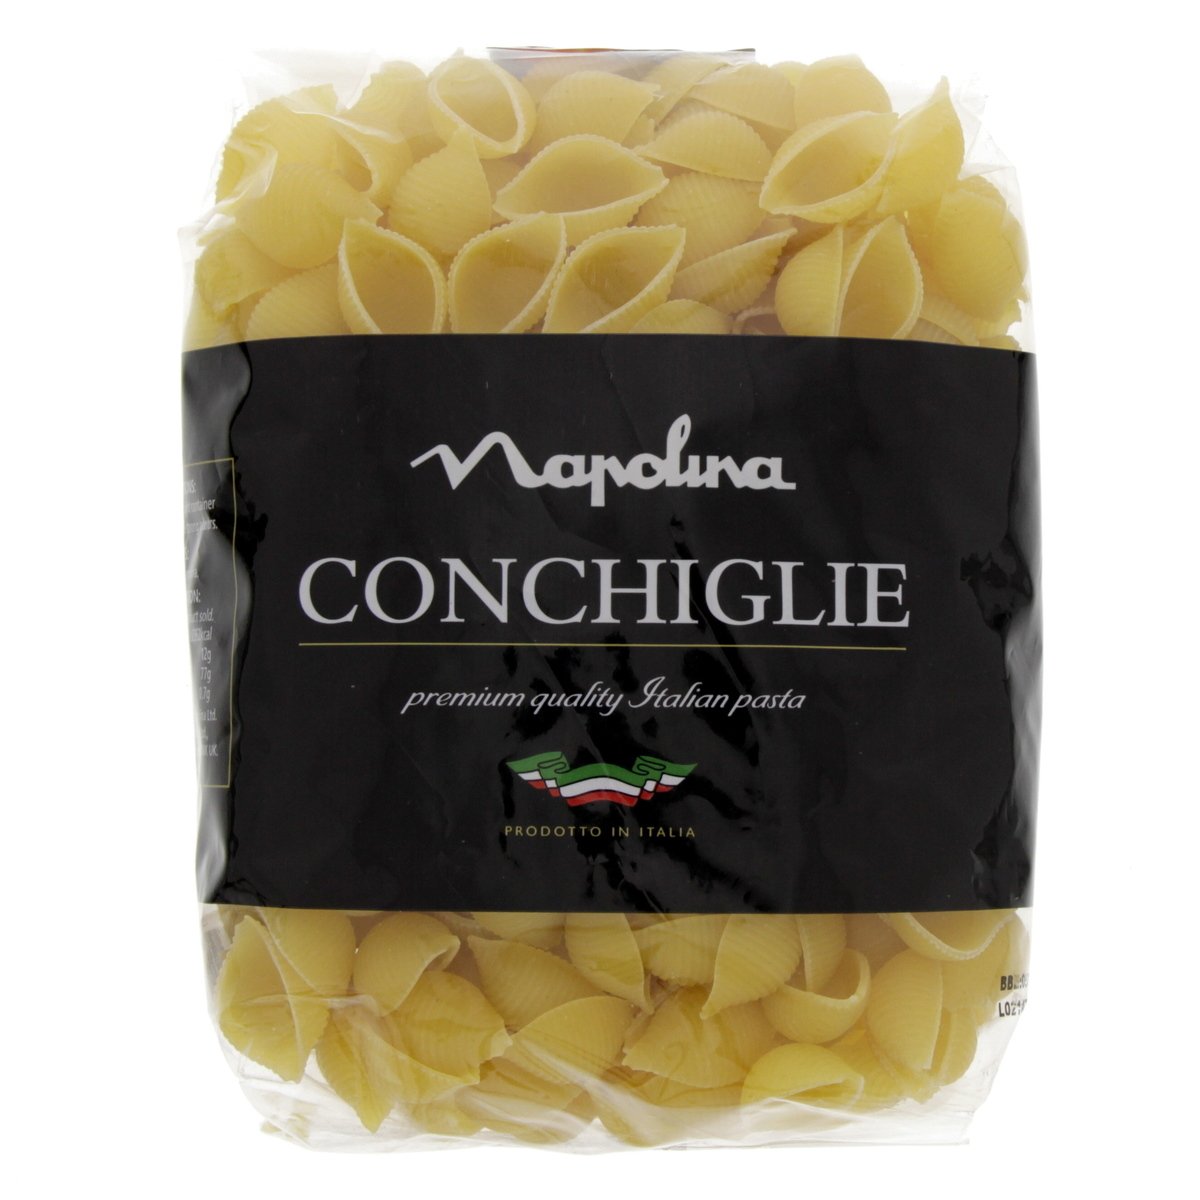 نابولينا كونشيغلي فاخر مكرونة ايطالية 500 جم